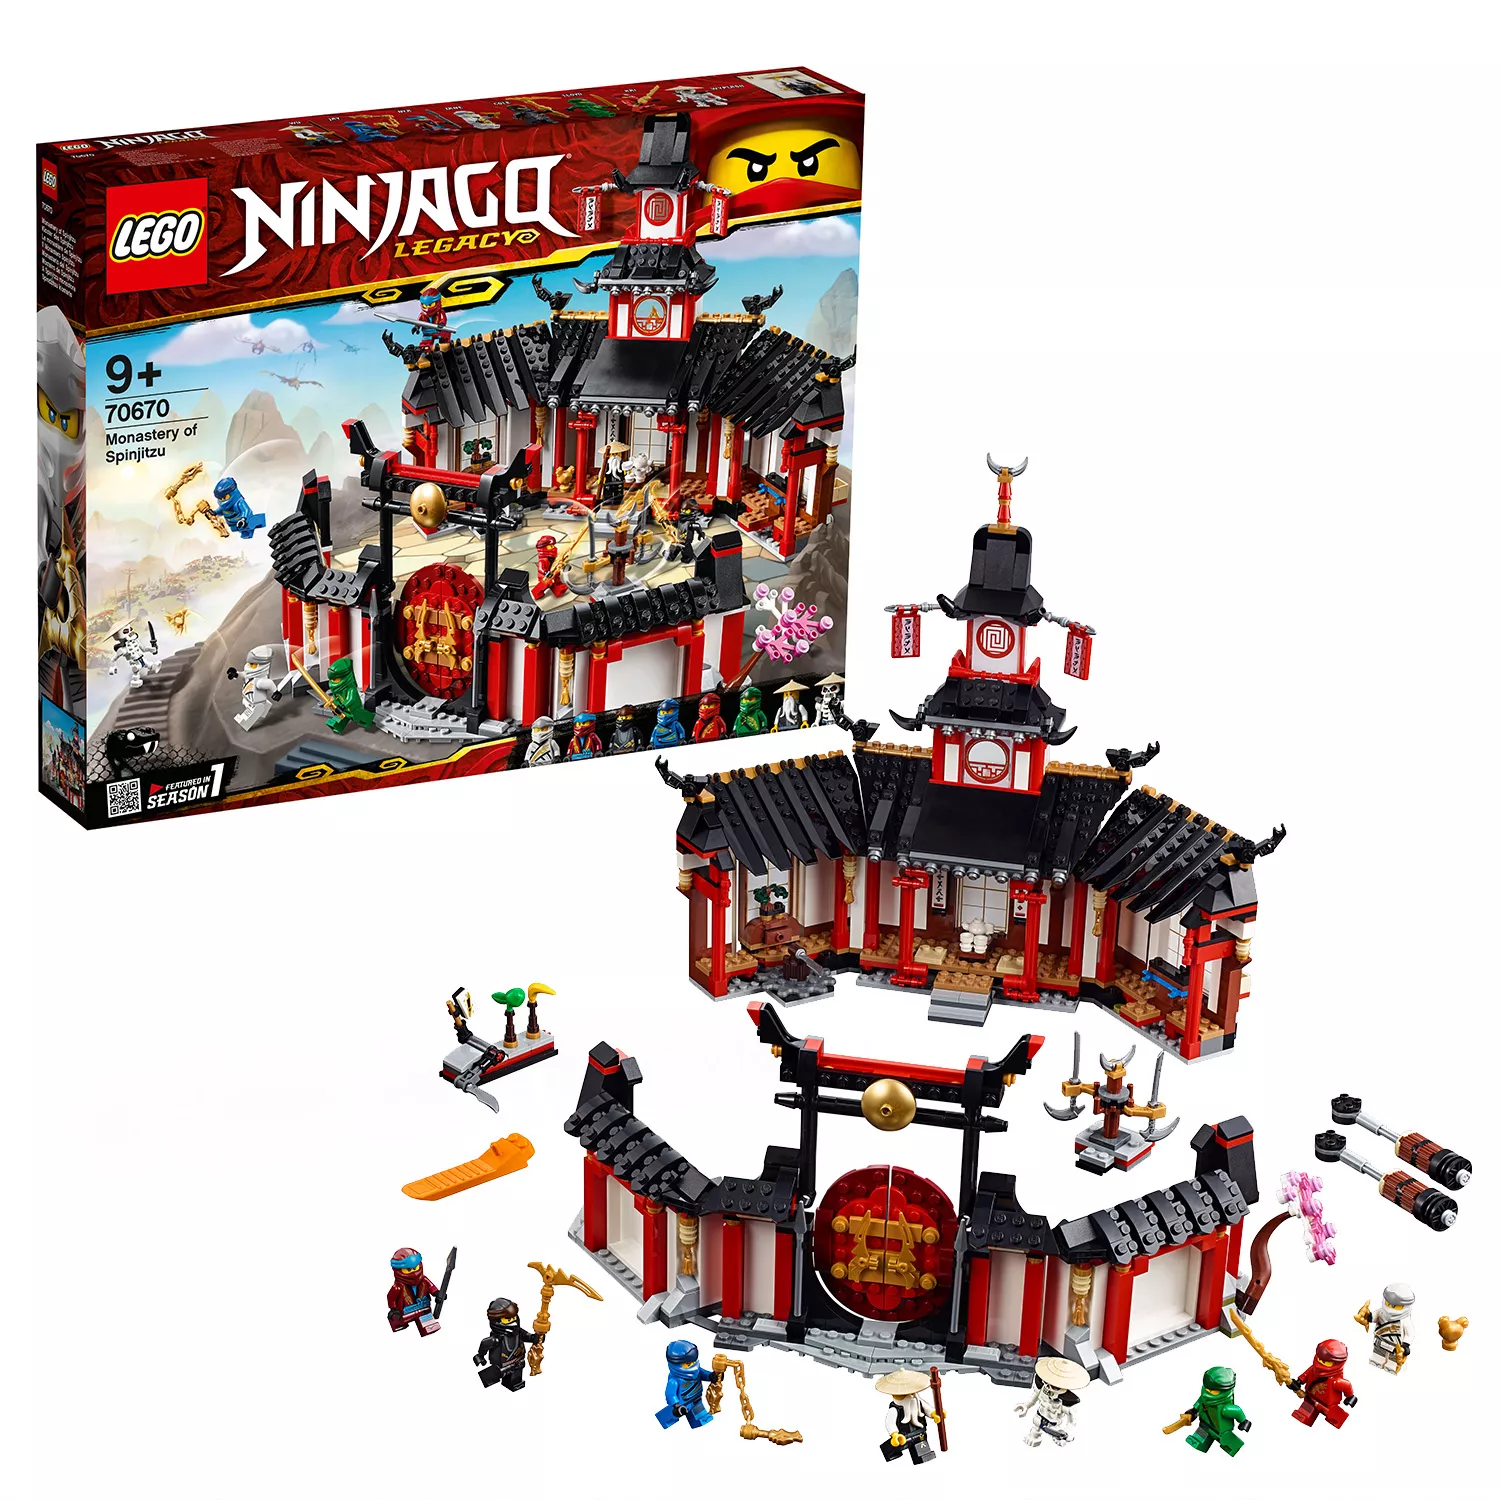 LEGO NINJAGO Kloster des Spinjitzu - 70670